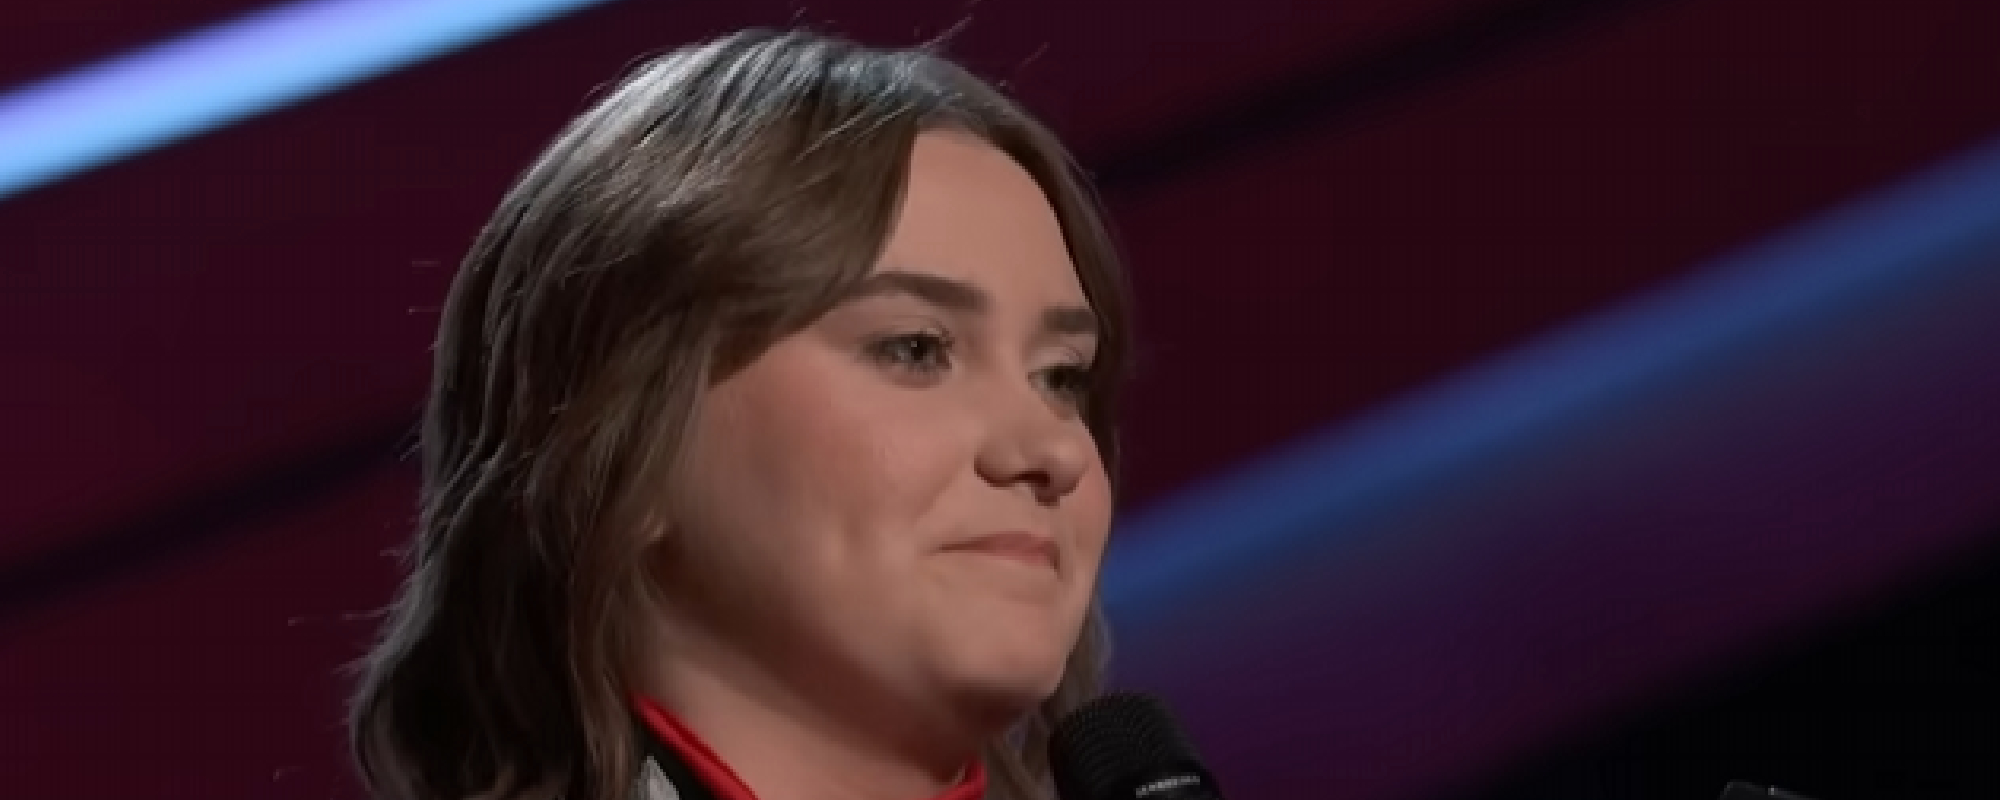 Ruby Leigh, finaliste de "The Voice", rencontre enfin le "héros" qui a inspiré sa chanson d'audition